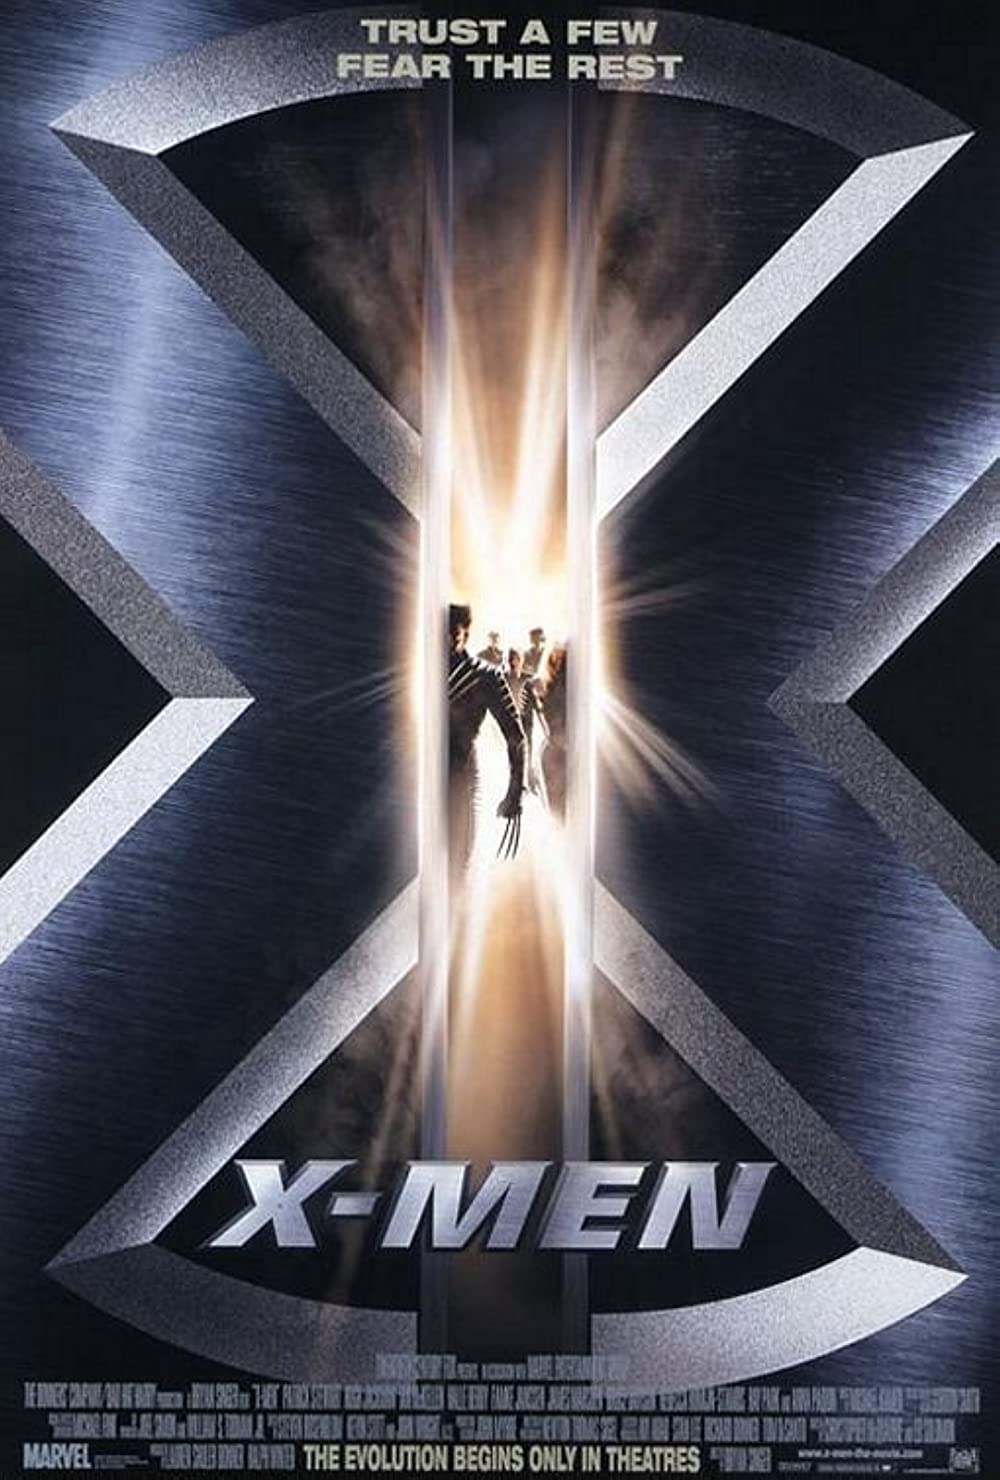 X men dark phoenix movie imdb rating